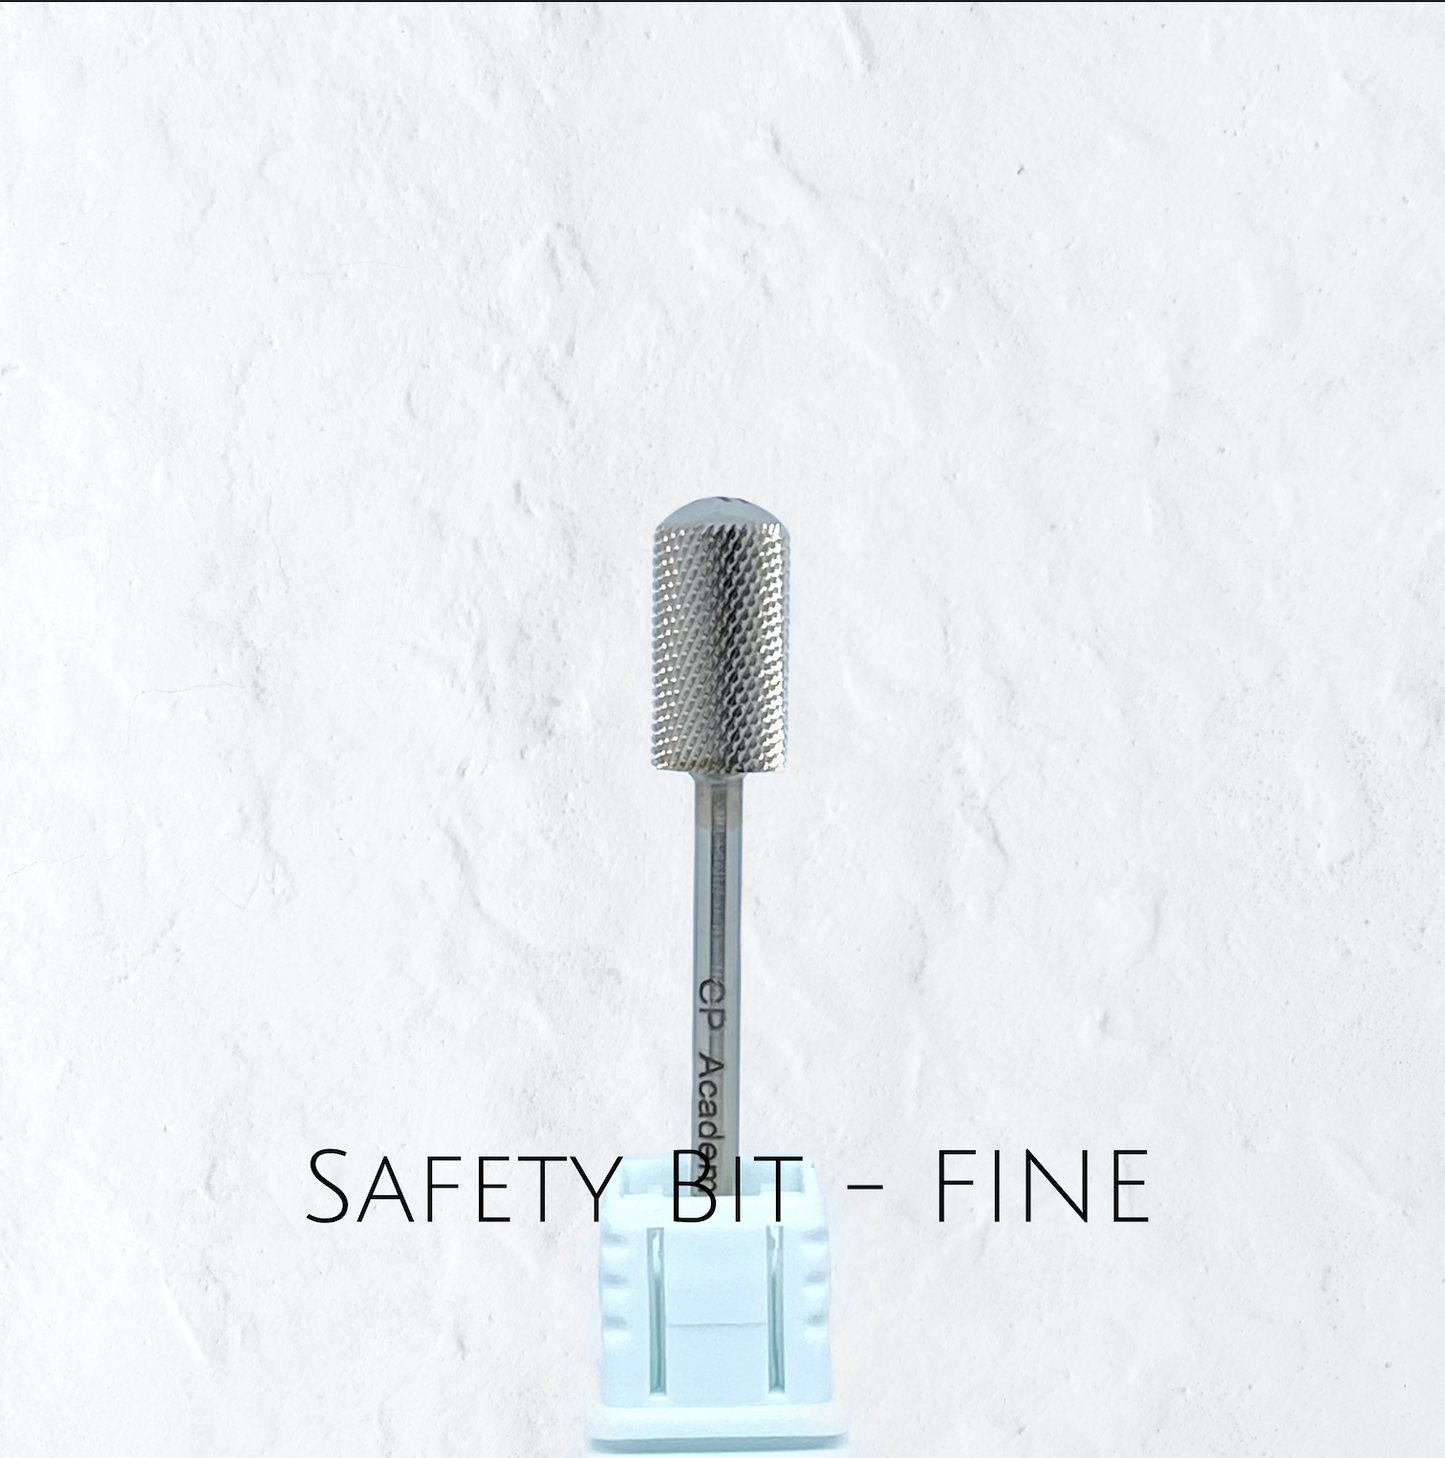 Safety Drill Bit - Fine